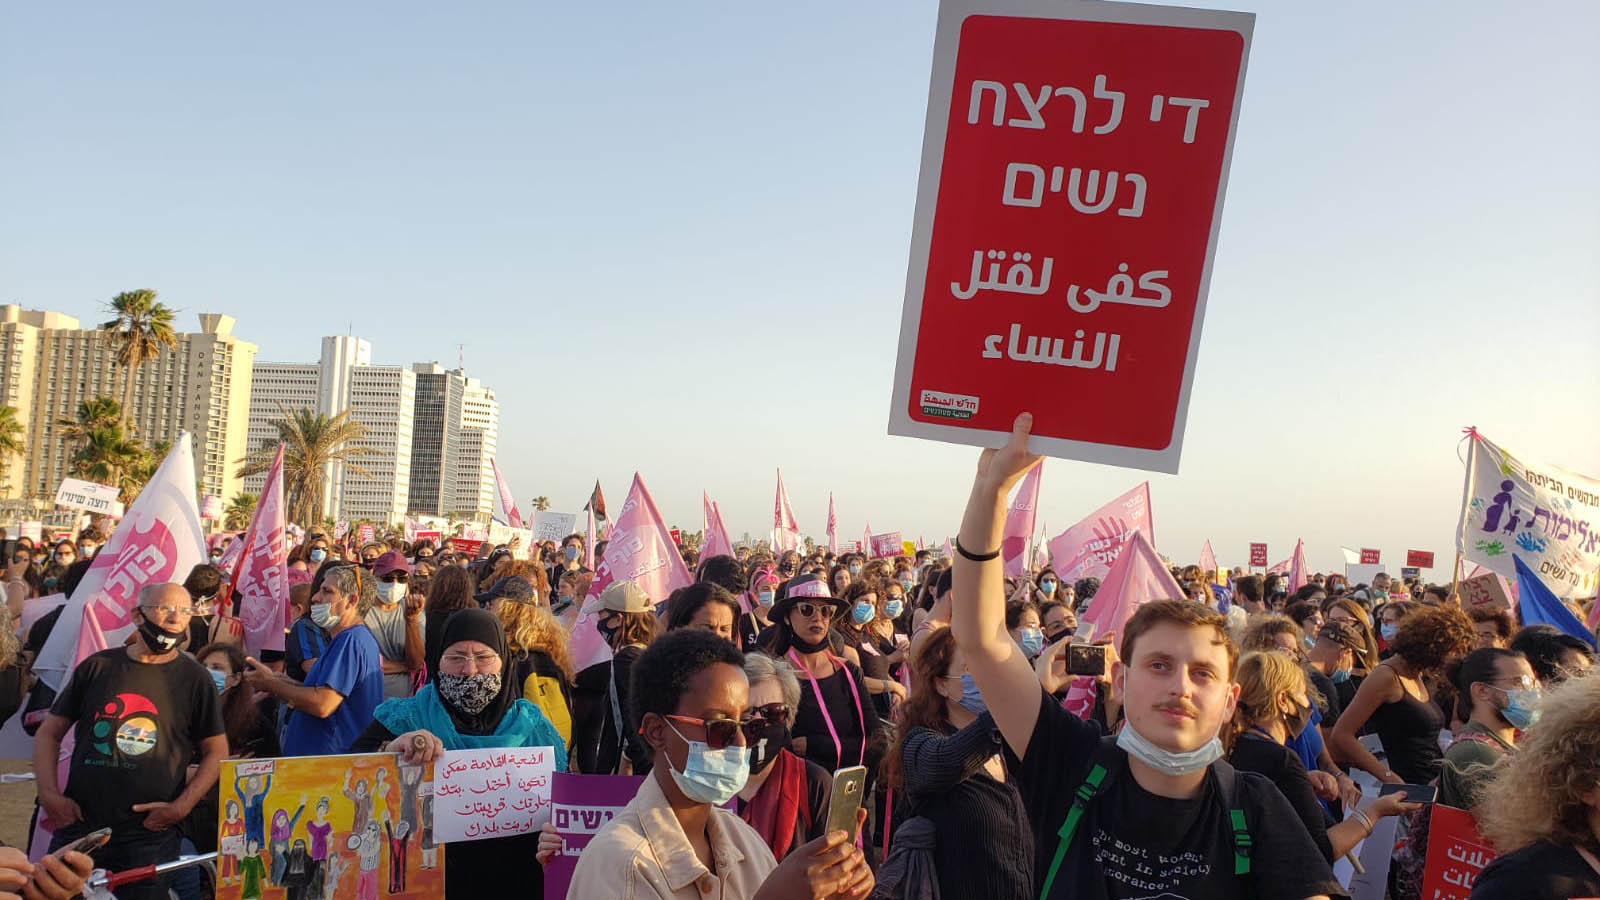 مسيرة تل أبيب ضد العنف الذي تعانيه المرأة (تصوير بيتي عزري)